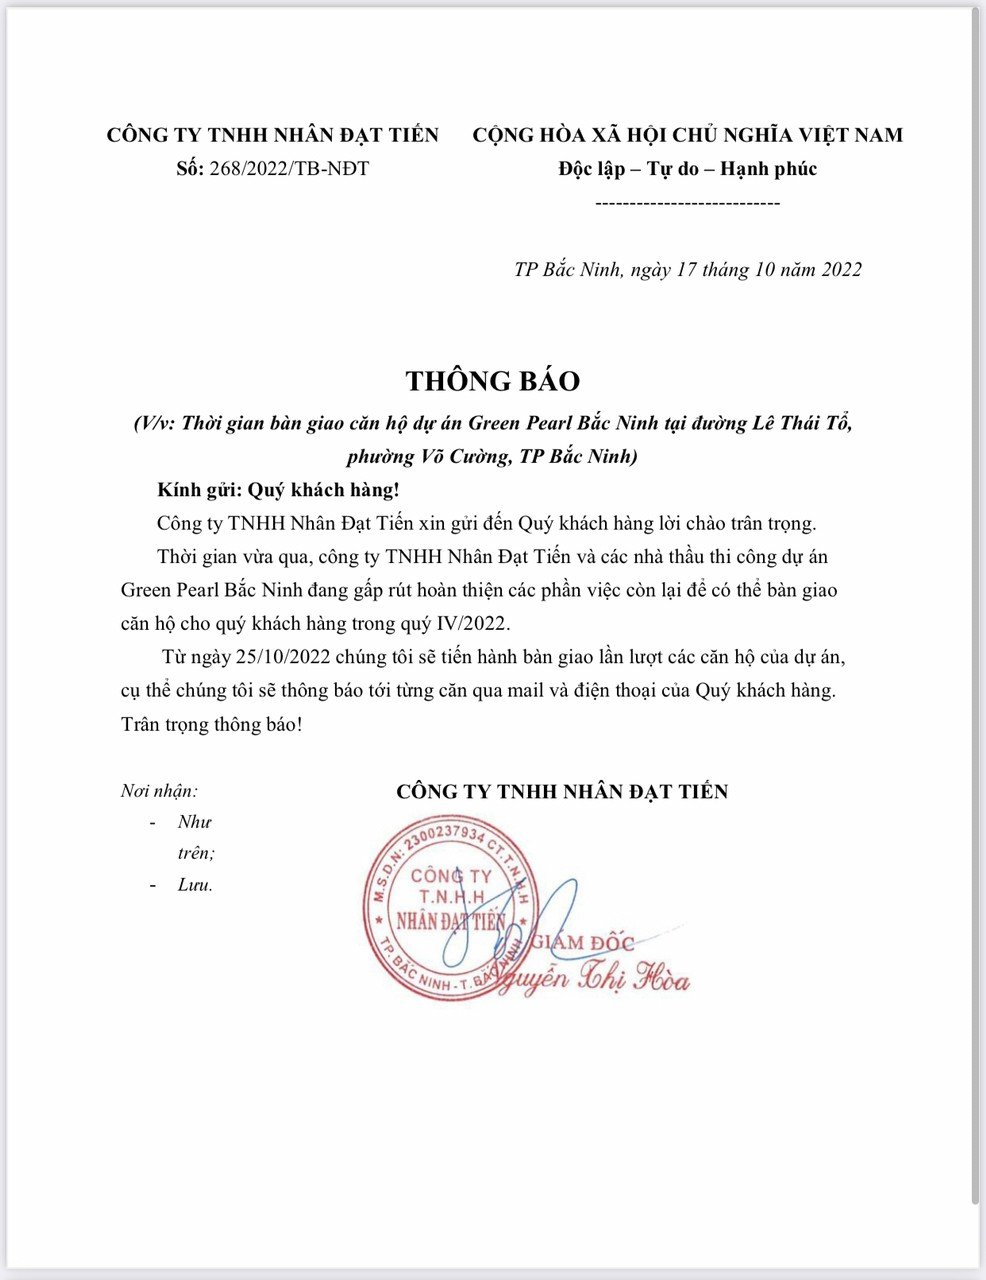 Đã có thông báo nhận nhà, chung cư cao cấp Green Pearl Bắc Ninh